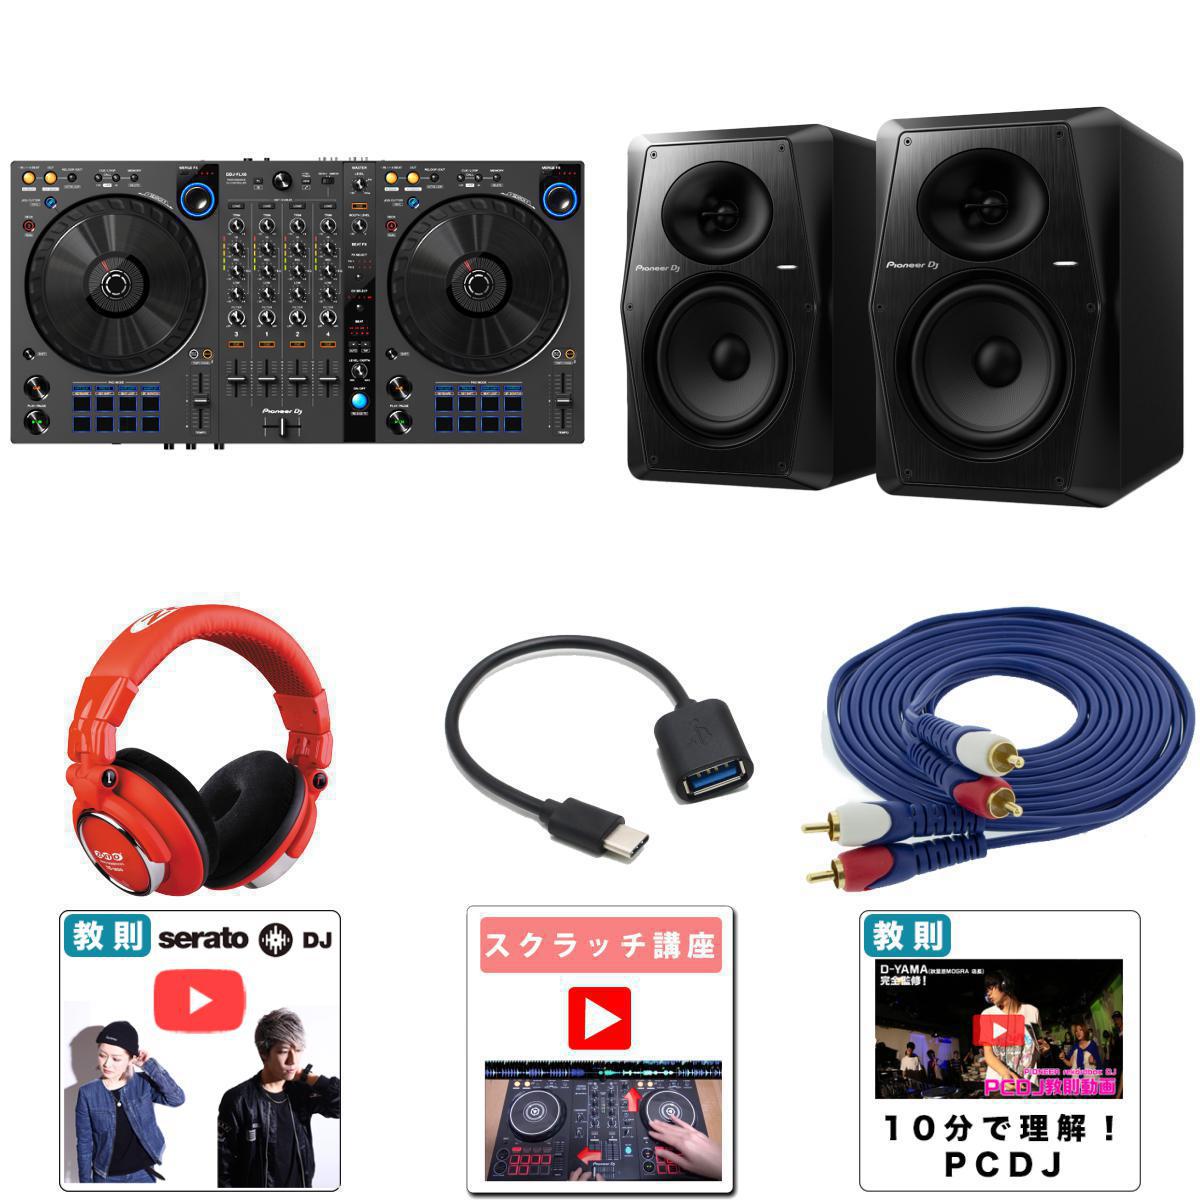 高音質VM-70Pioneer DJスピーカーセット】Pioneer DJ(パイオニア